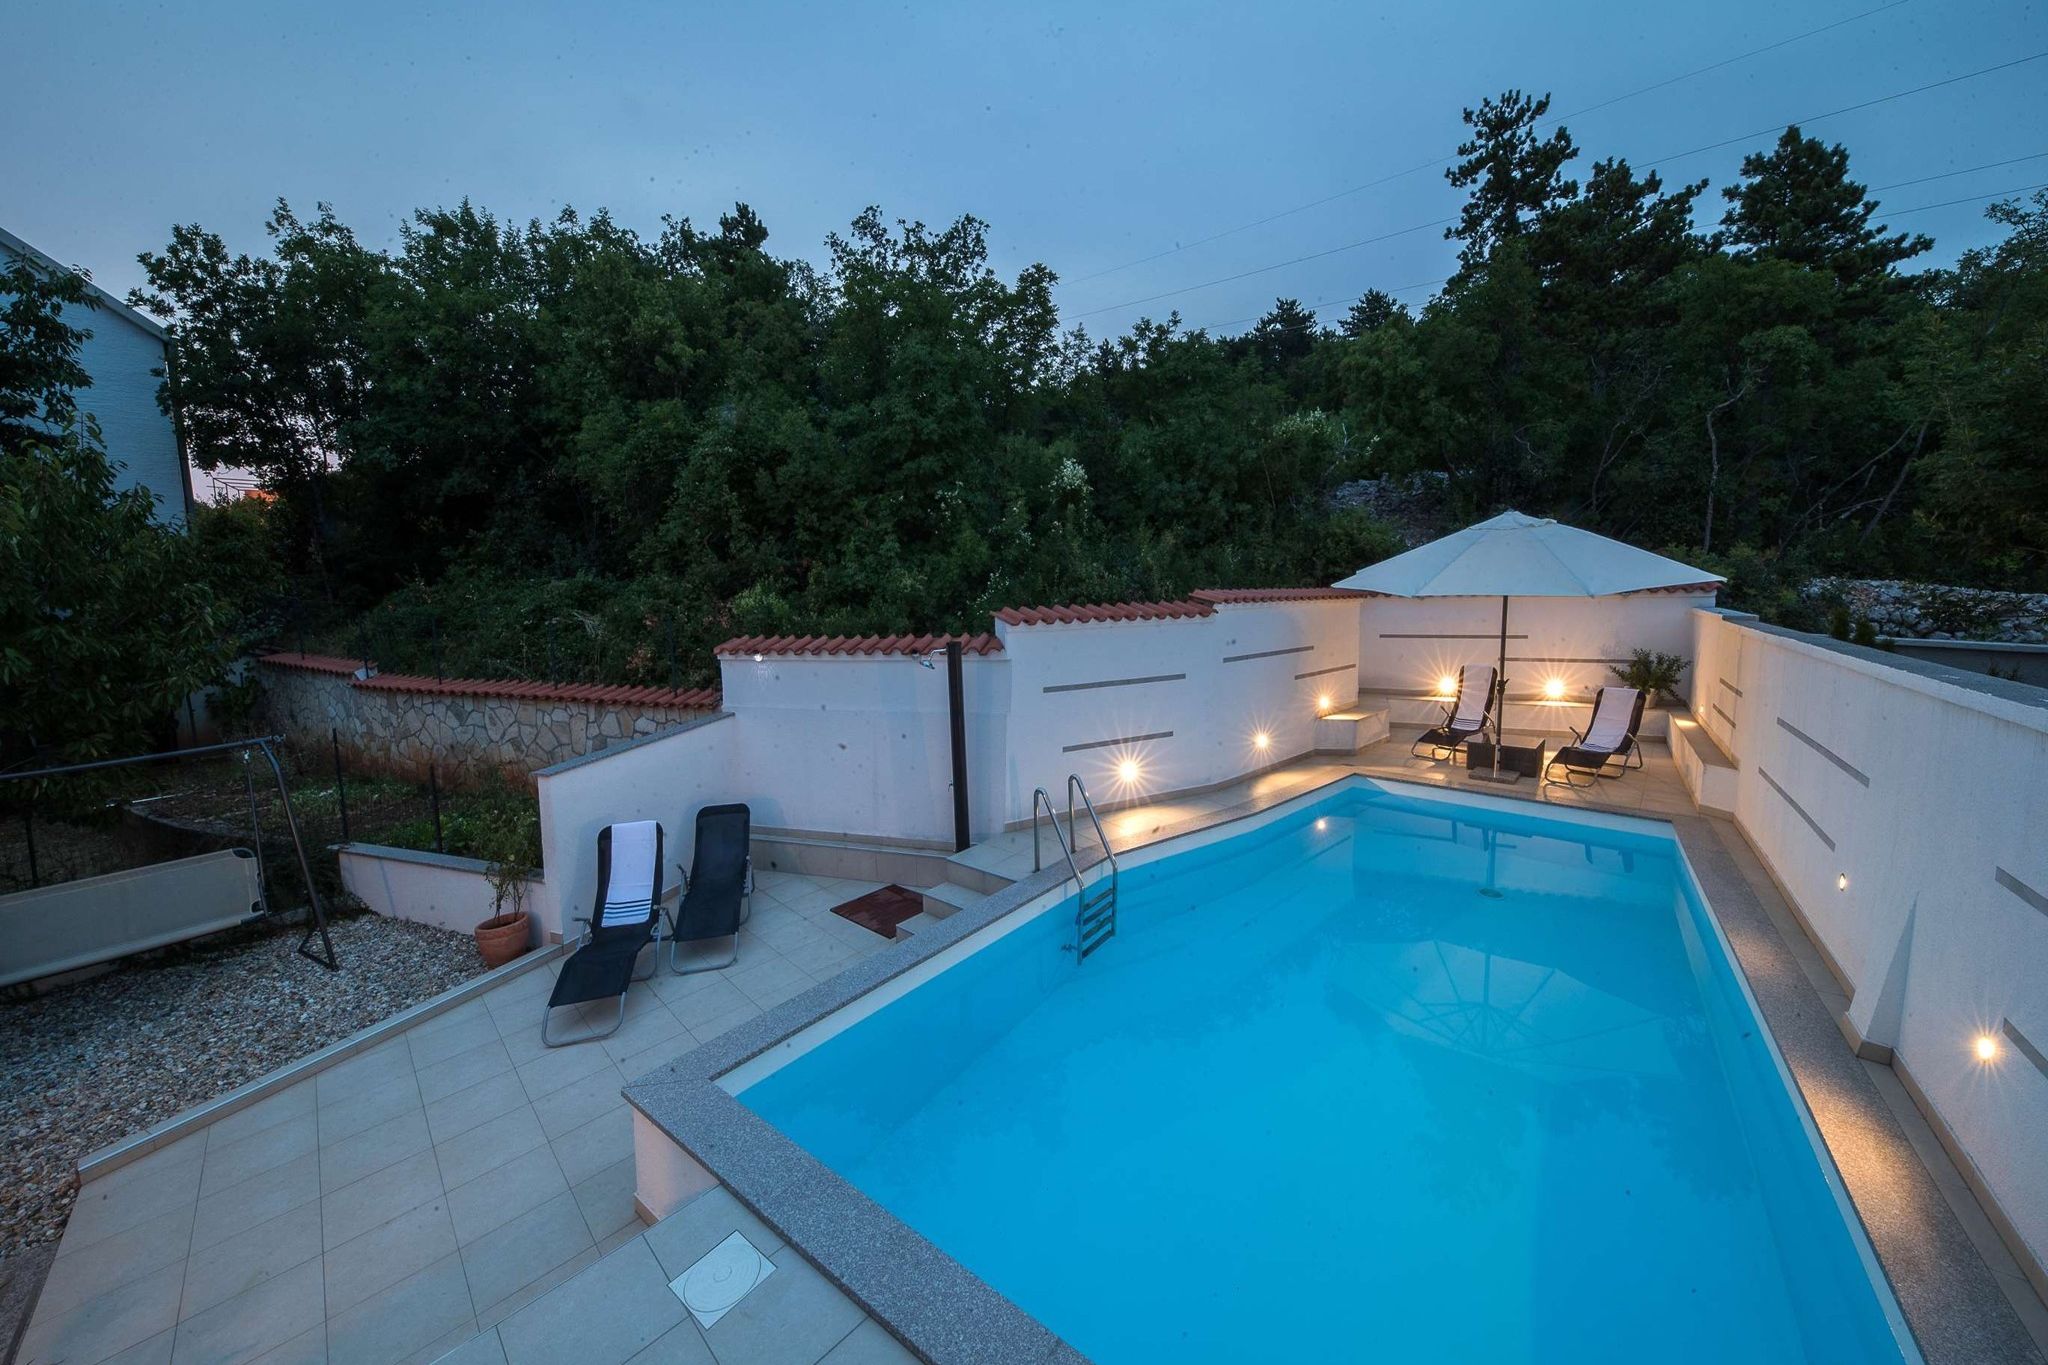 Mooi huis met privé zwembad, overdekt terras en zomerkeuken!